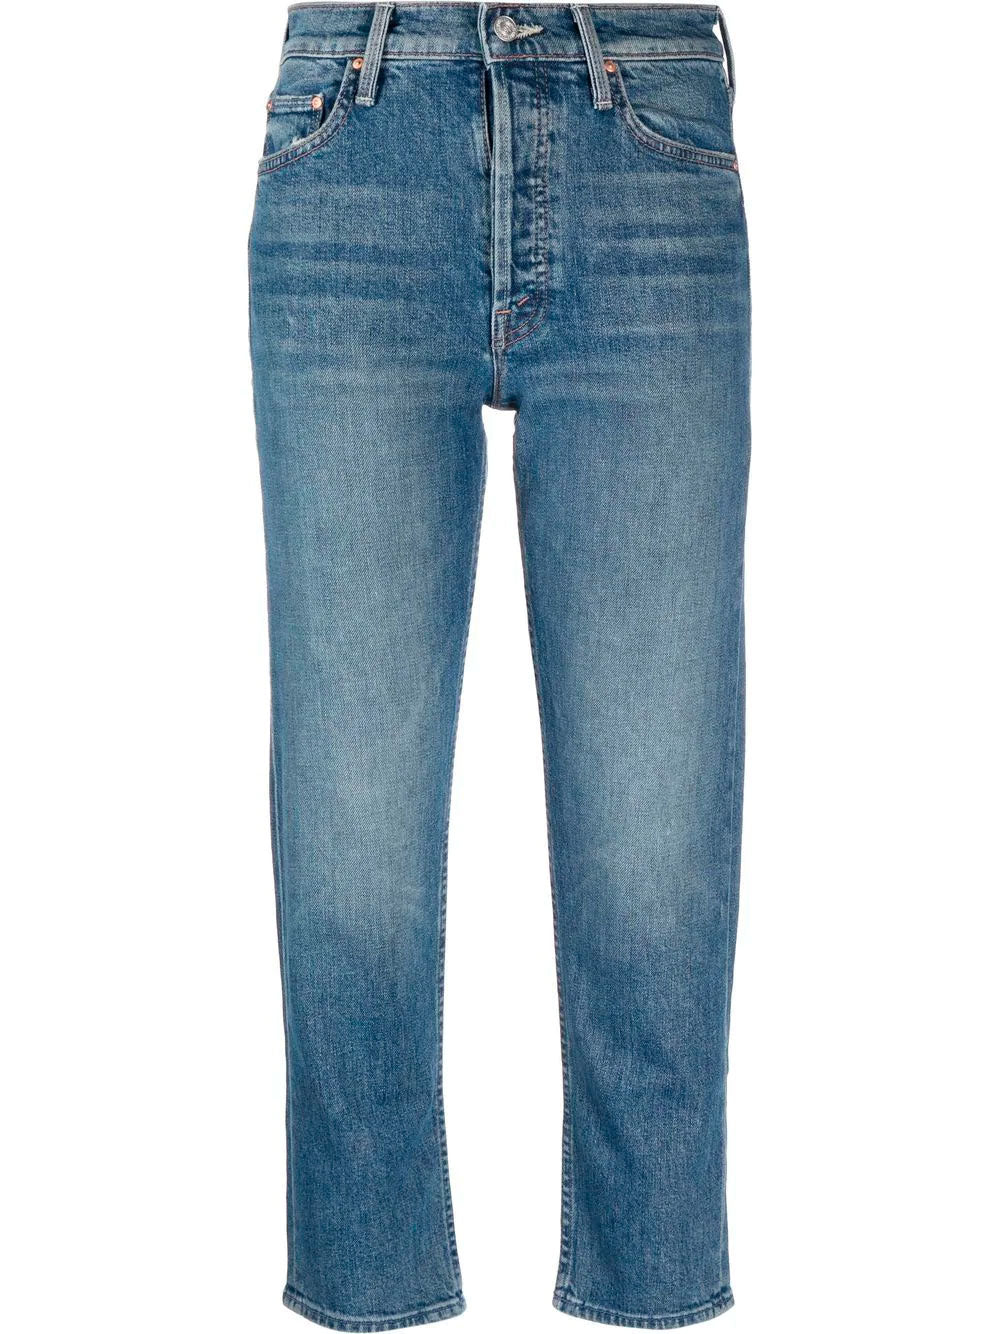 Tomcat jeans